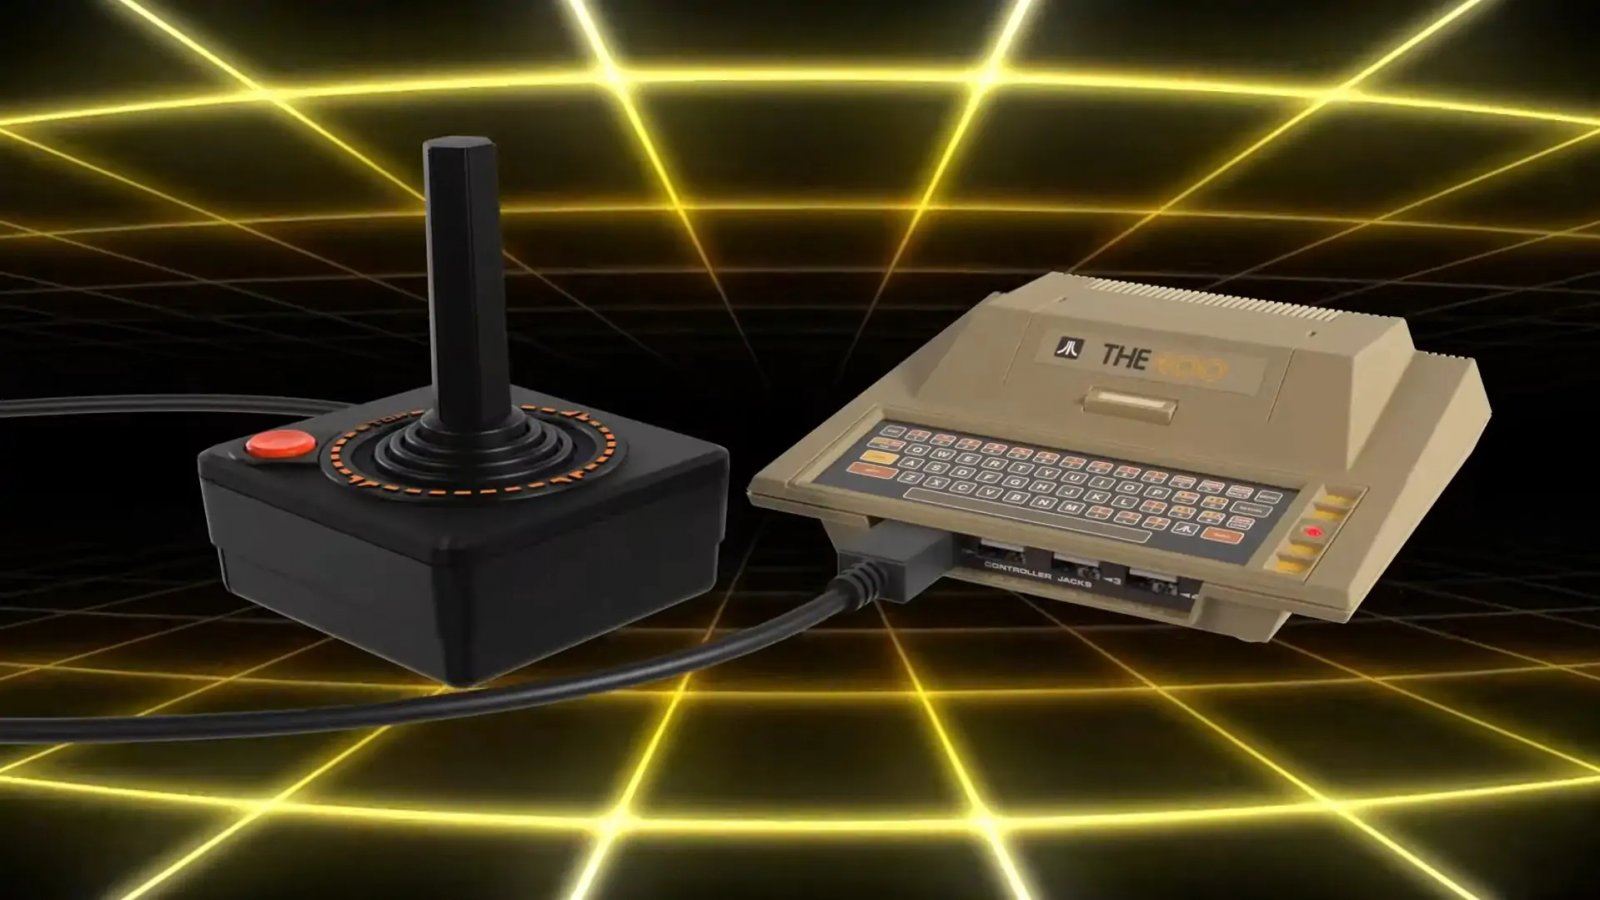 THE400 Mini: ecco i giochi preinstallati nella miniconsole basata sull'Atari 400